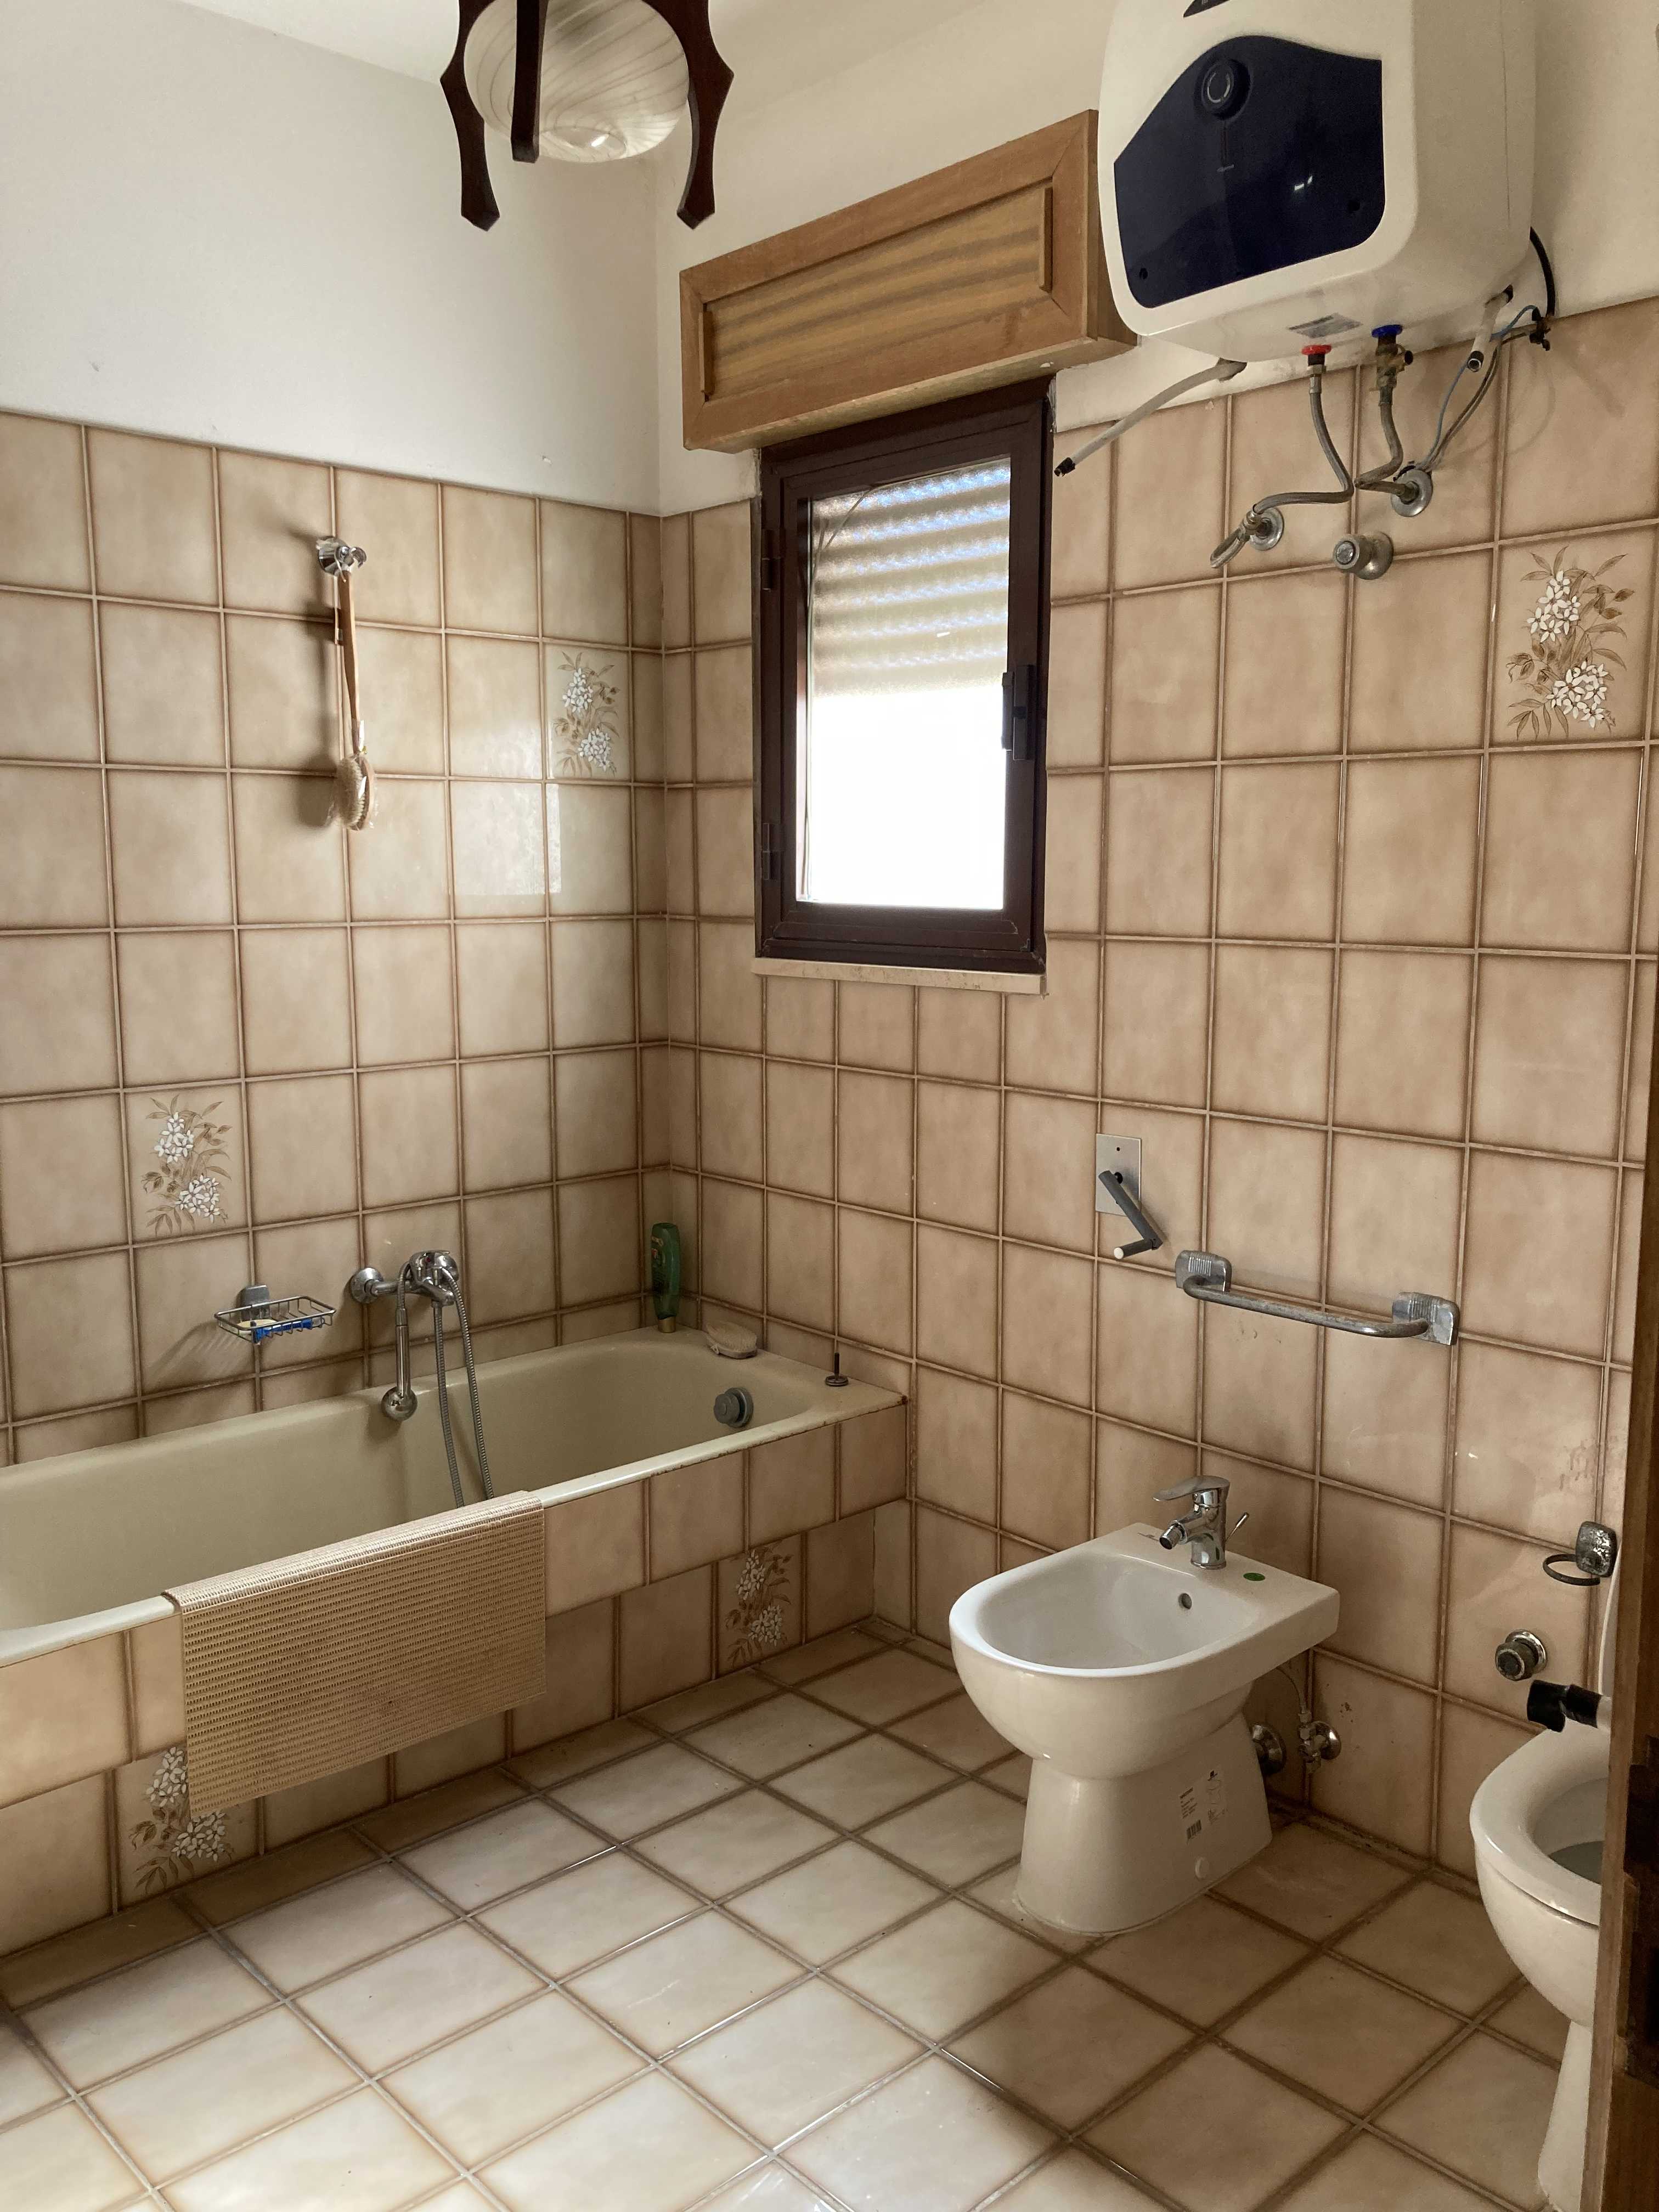 Vendite Salento: Vendita appartamento (Castrignano del Capo) - bagno1